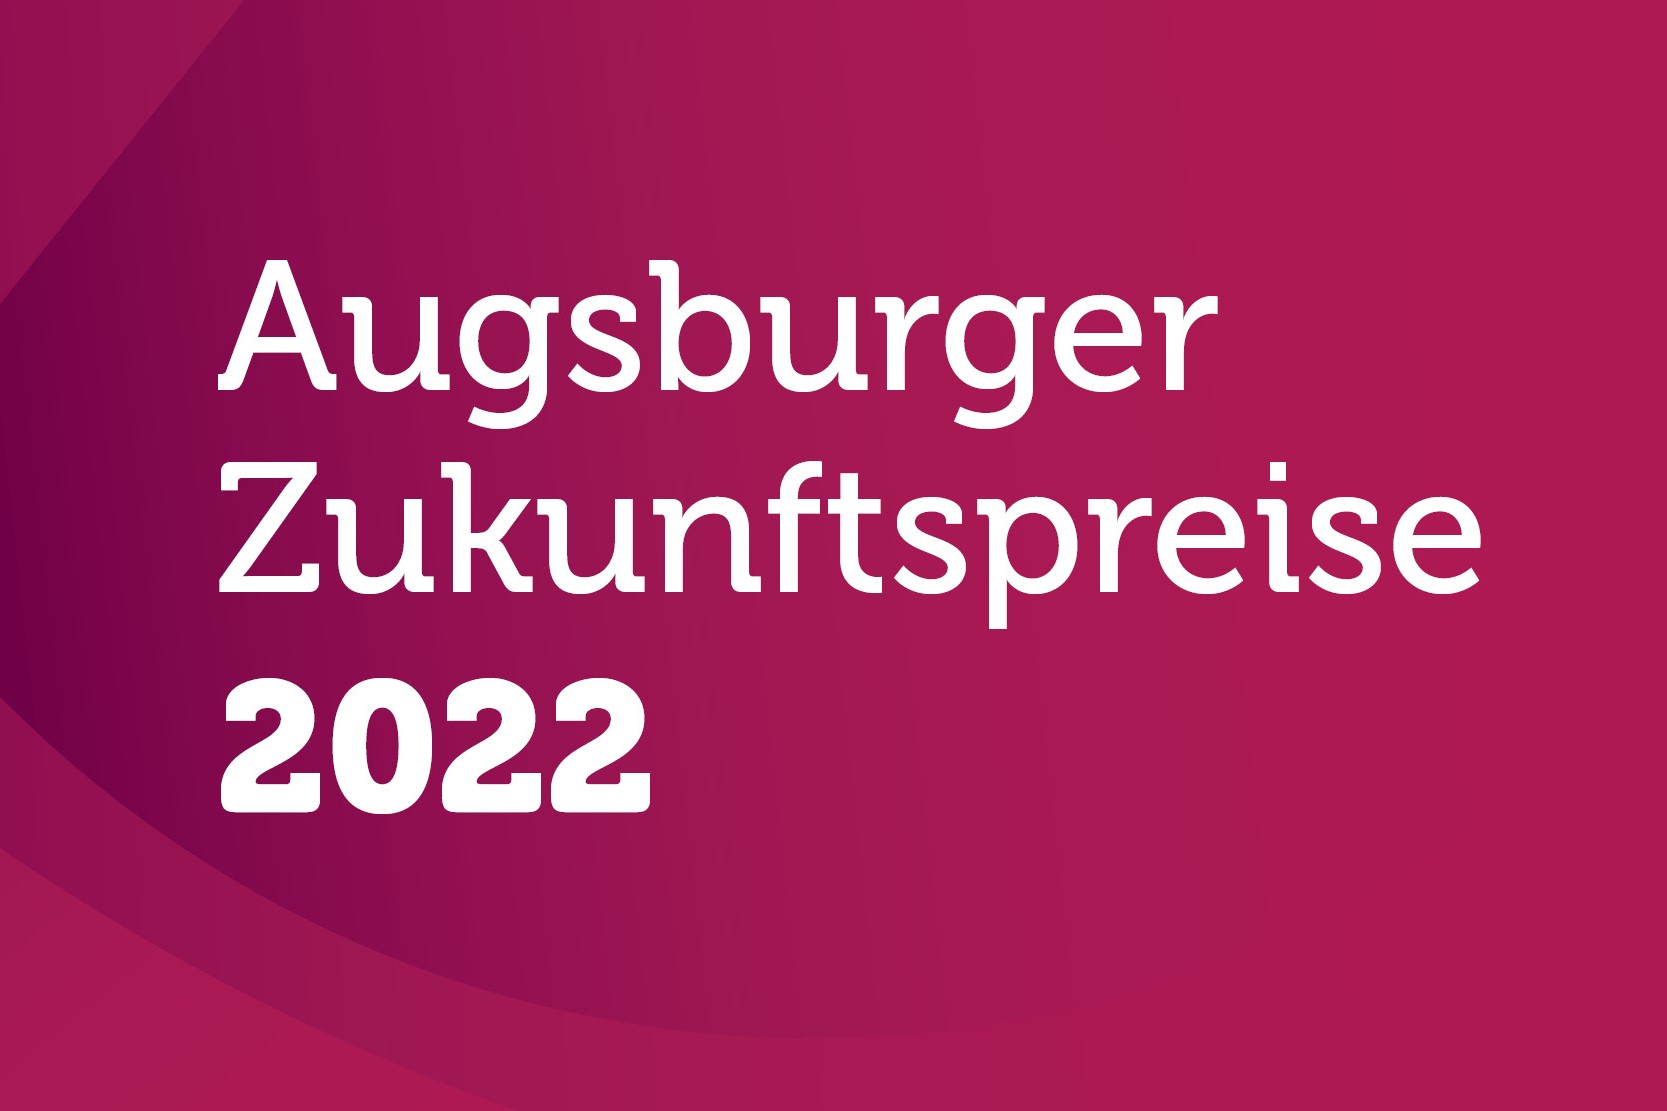 Augsburger Zukunftspreise 2022